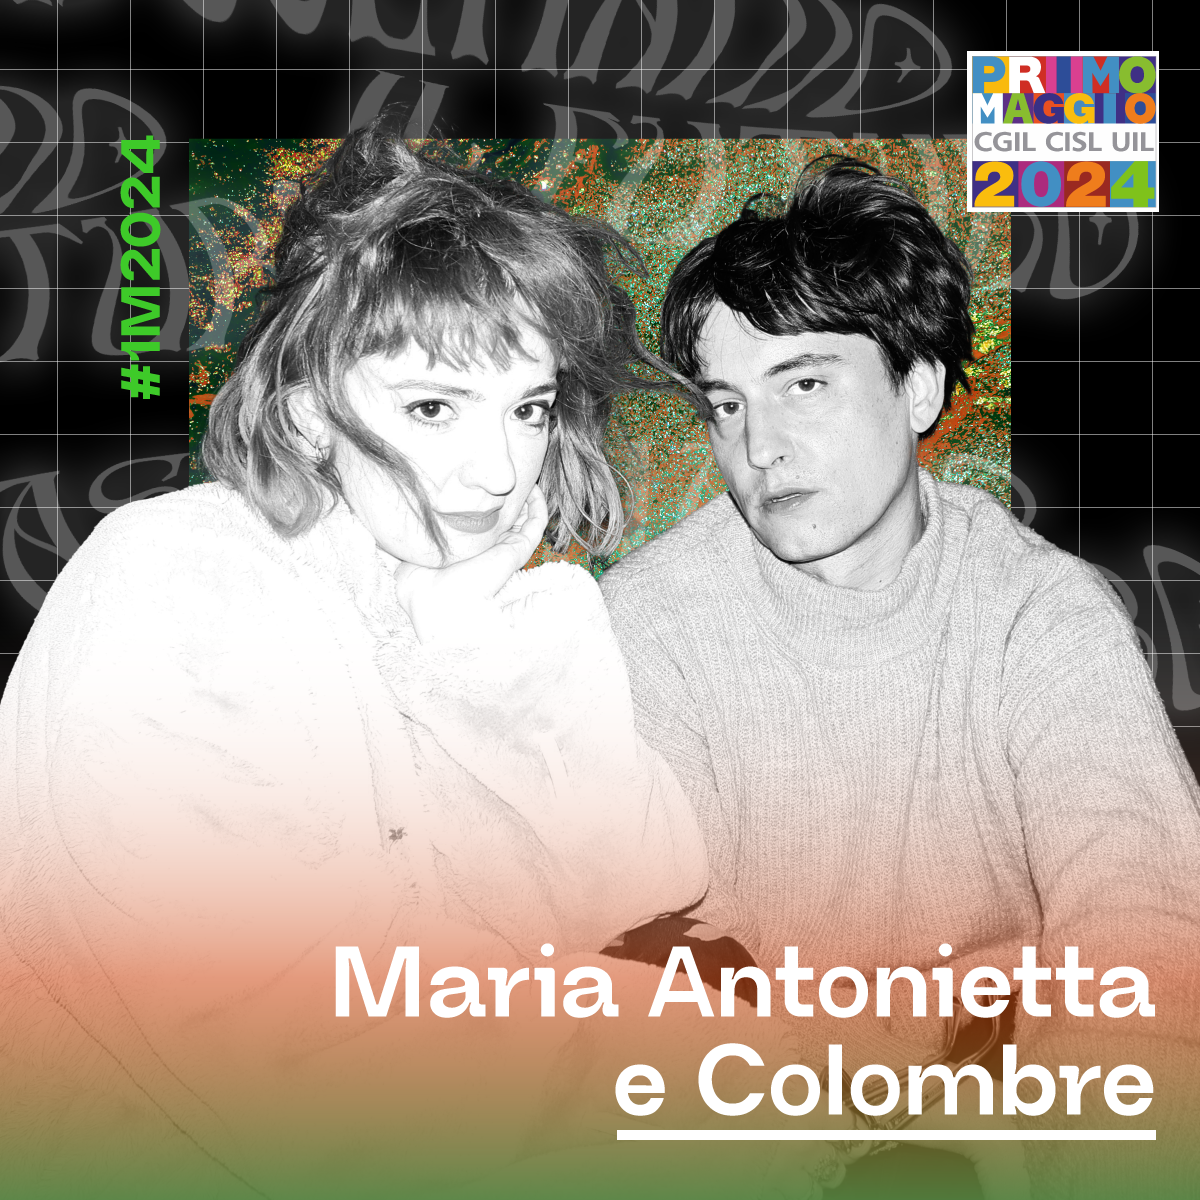 Maria Antonietta e Colombre al 1 Maggio 2024 di Roma.